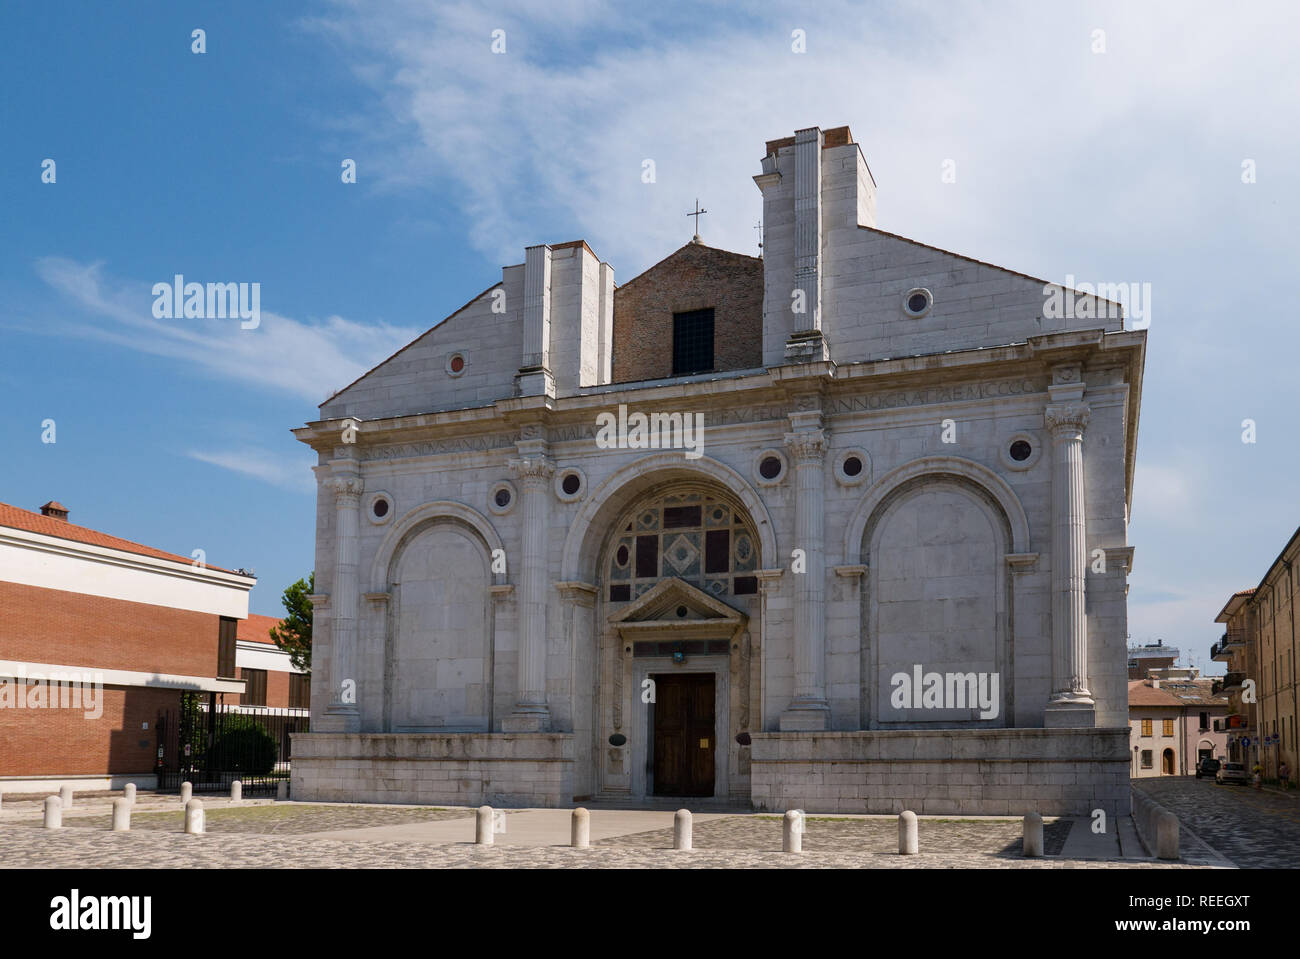 El Tempio Malatestiano (significa Templo Malatesta) e inacabada Iglesia denominada de San Francisco, Rimini Foto de stock